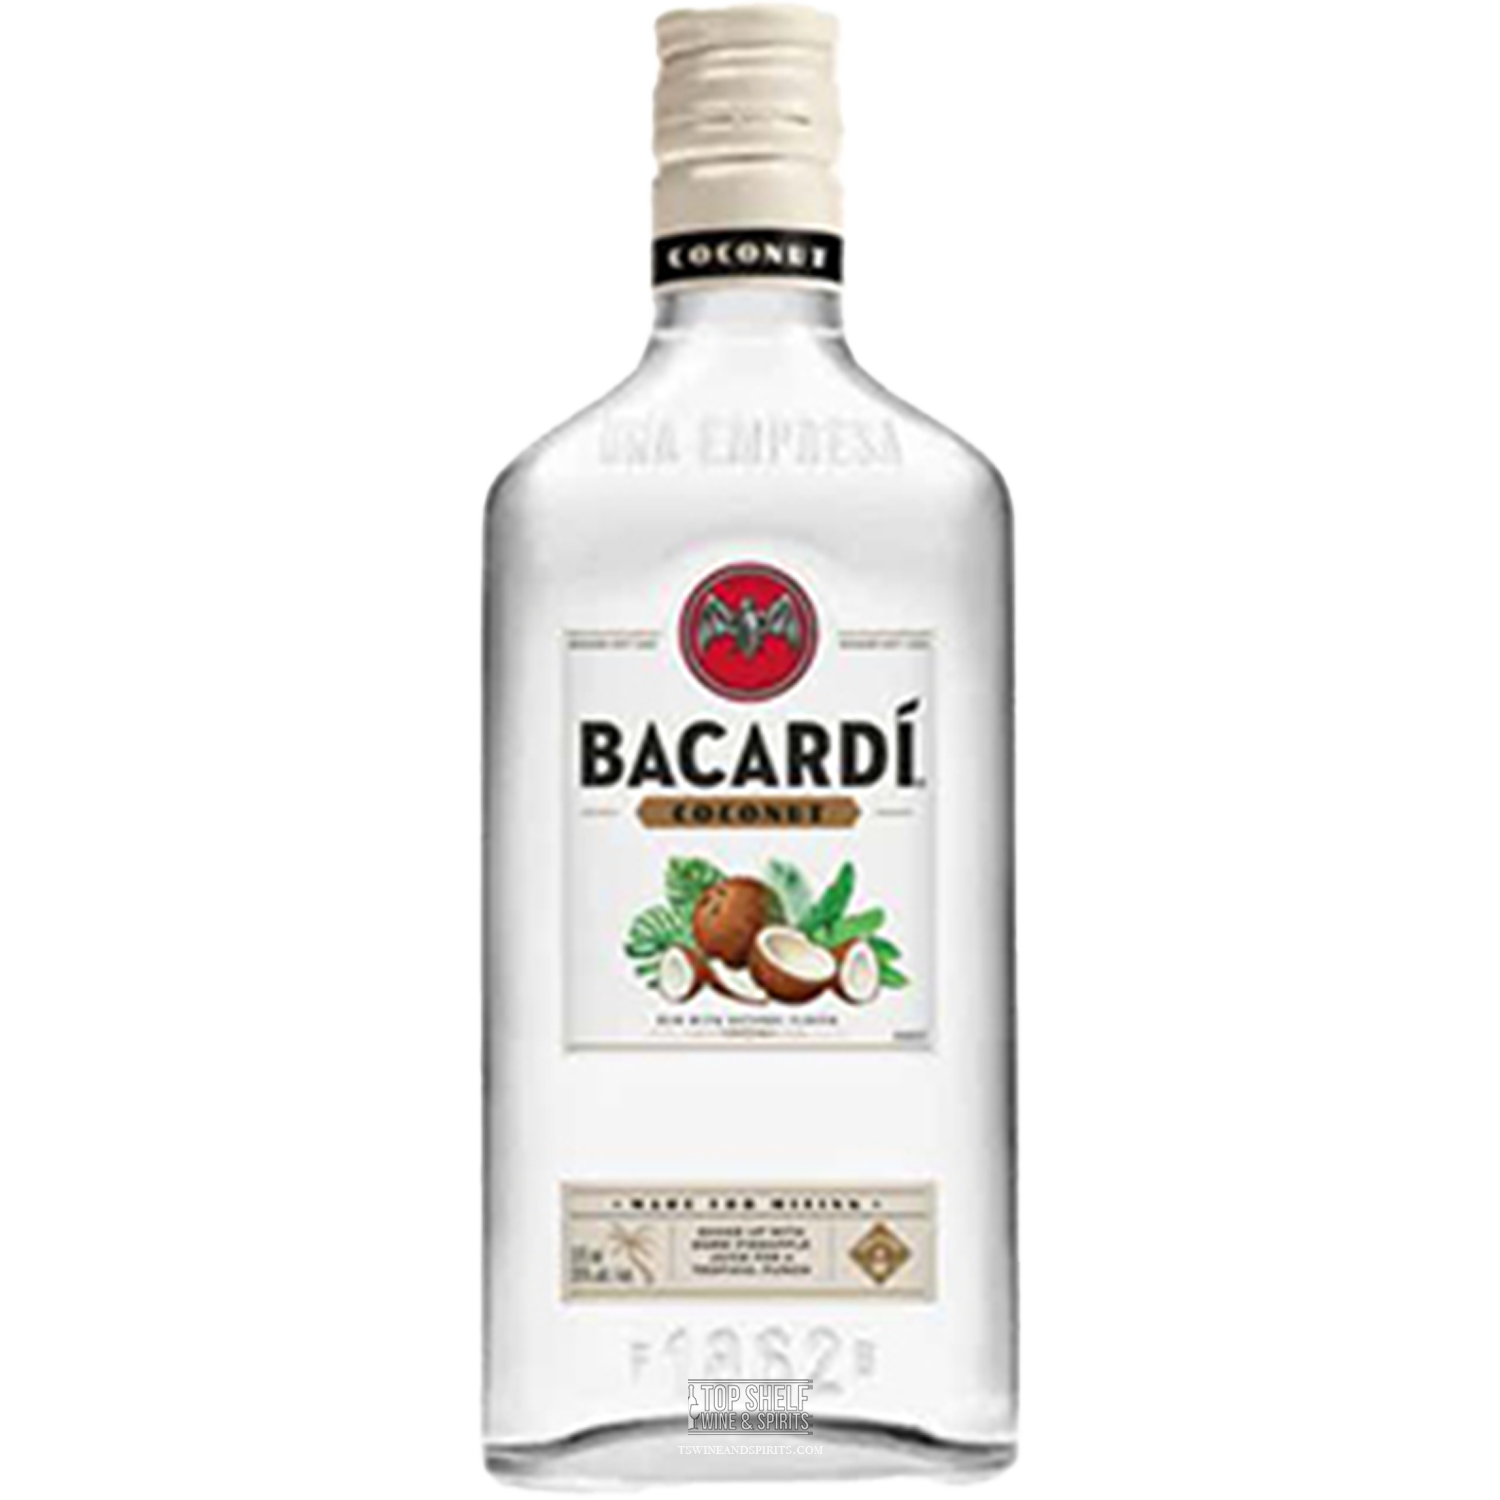 Bacardí Coconut Rum 375mL